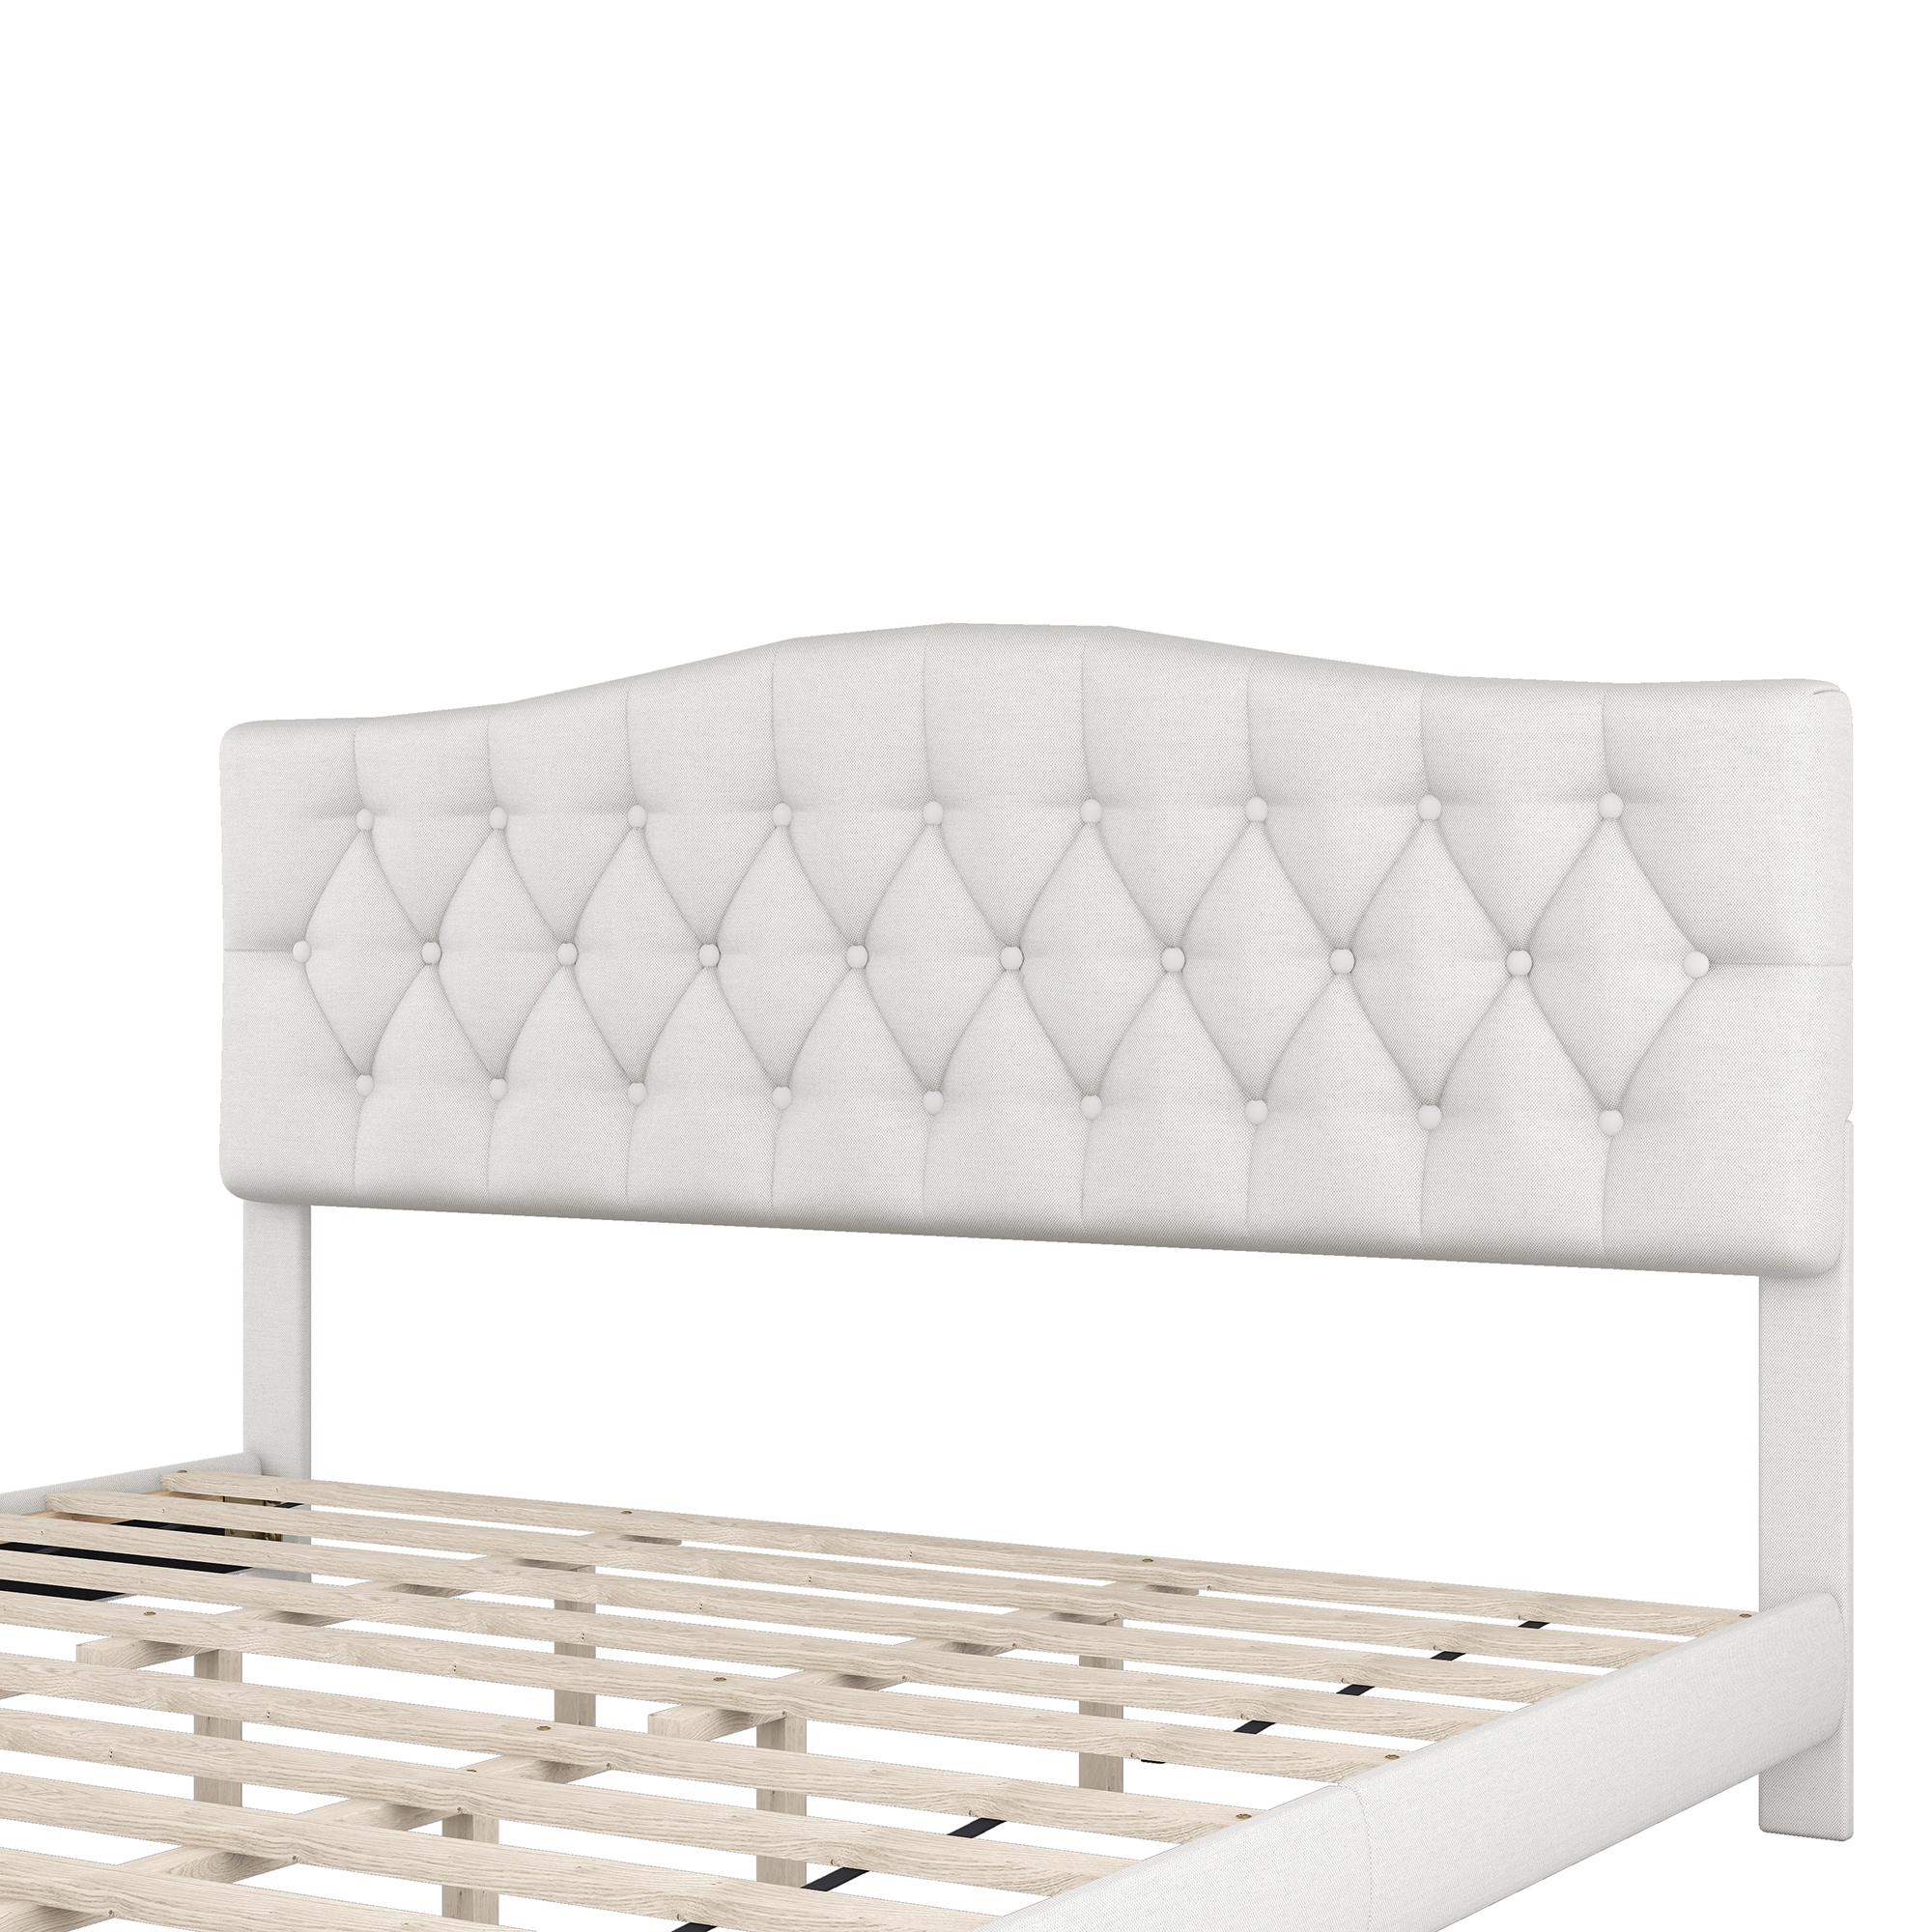 Elegant Upholstered Curved Tufted Linen Platform Bed, King Size - WF294420AAA